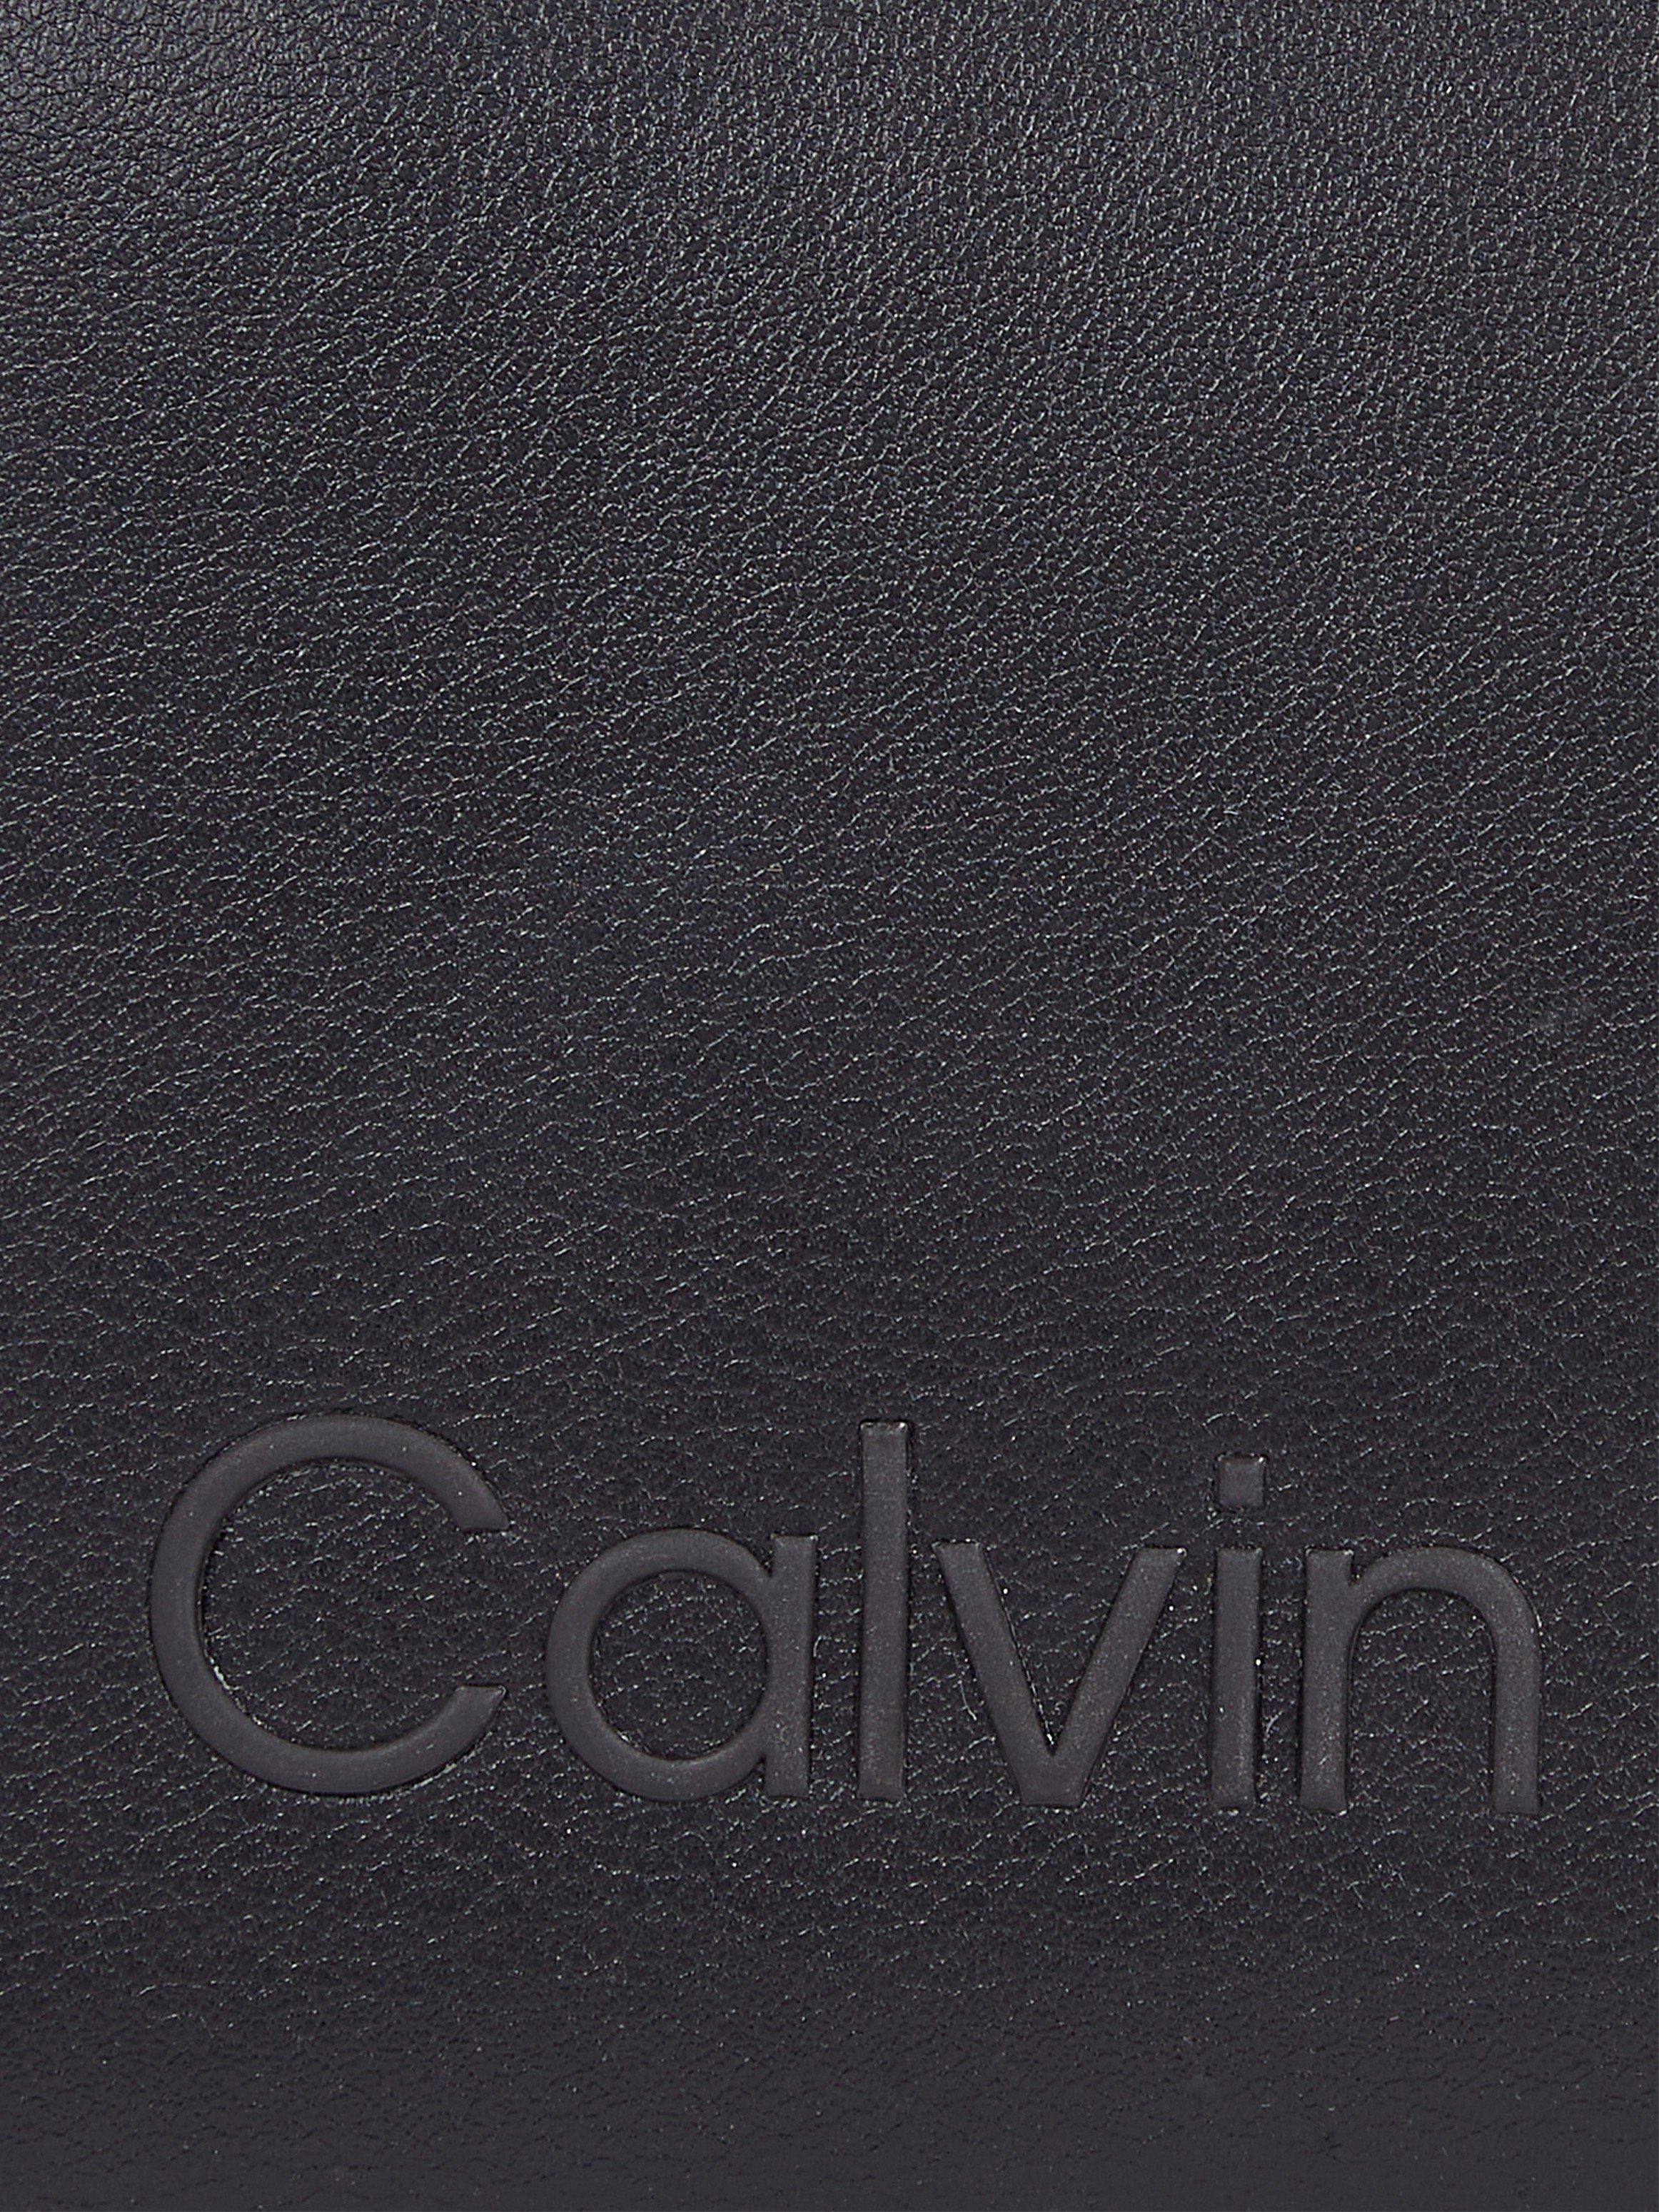 Calvin Klein Ck-Black WALLET kleinen im CK ZA Format Geldbörse MD, SET